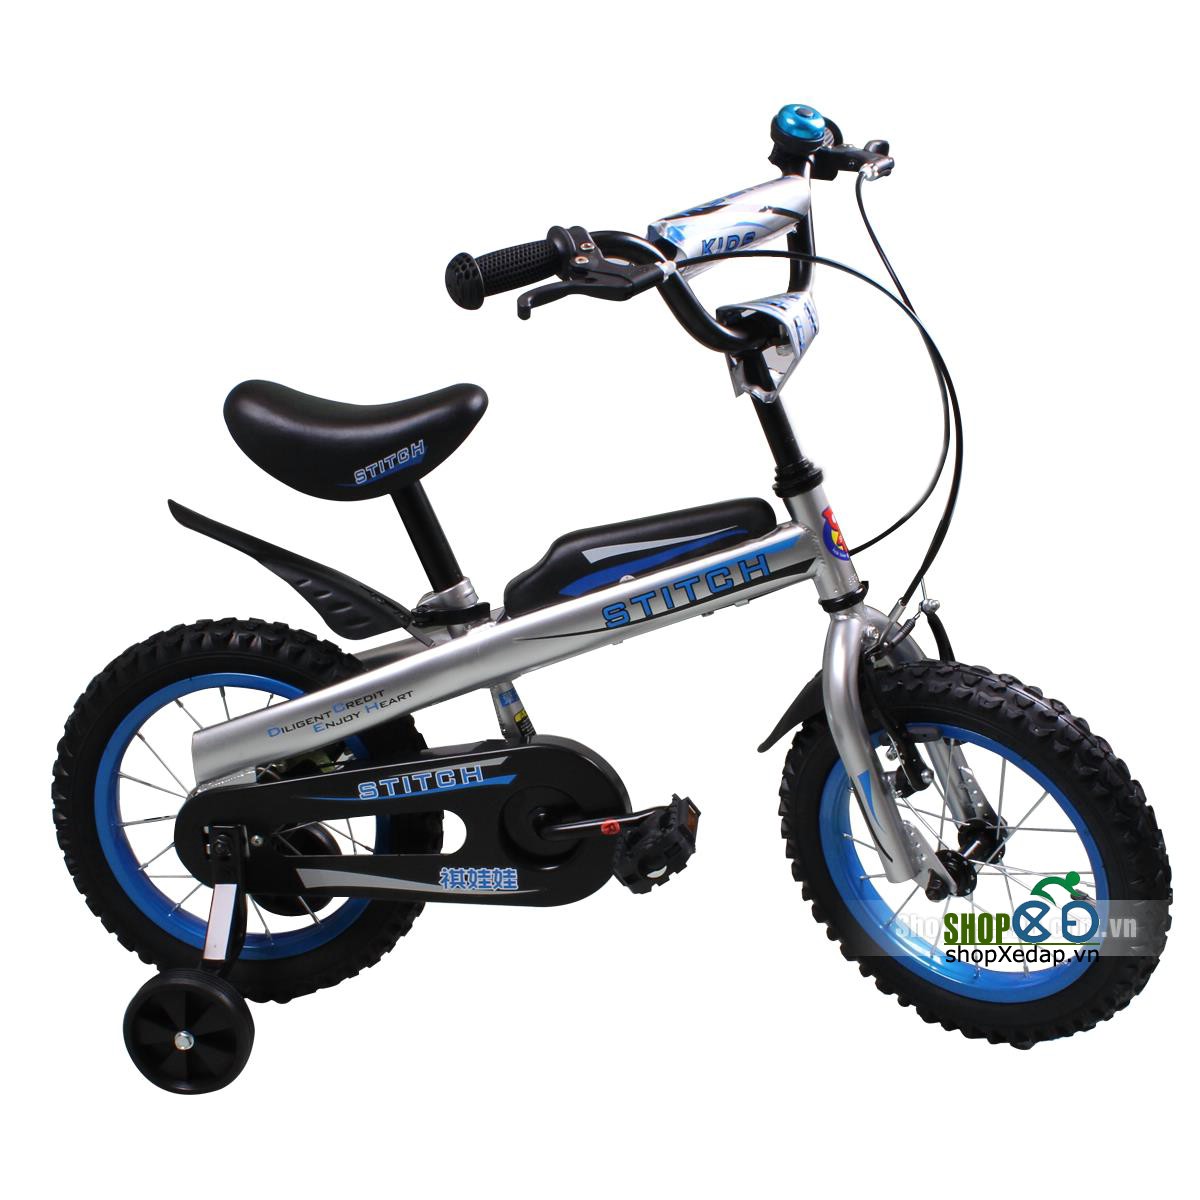 Xe đạp trẻ em Stitch JK 903 kiểu dáng mạnh mẽ